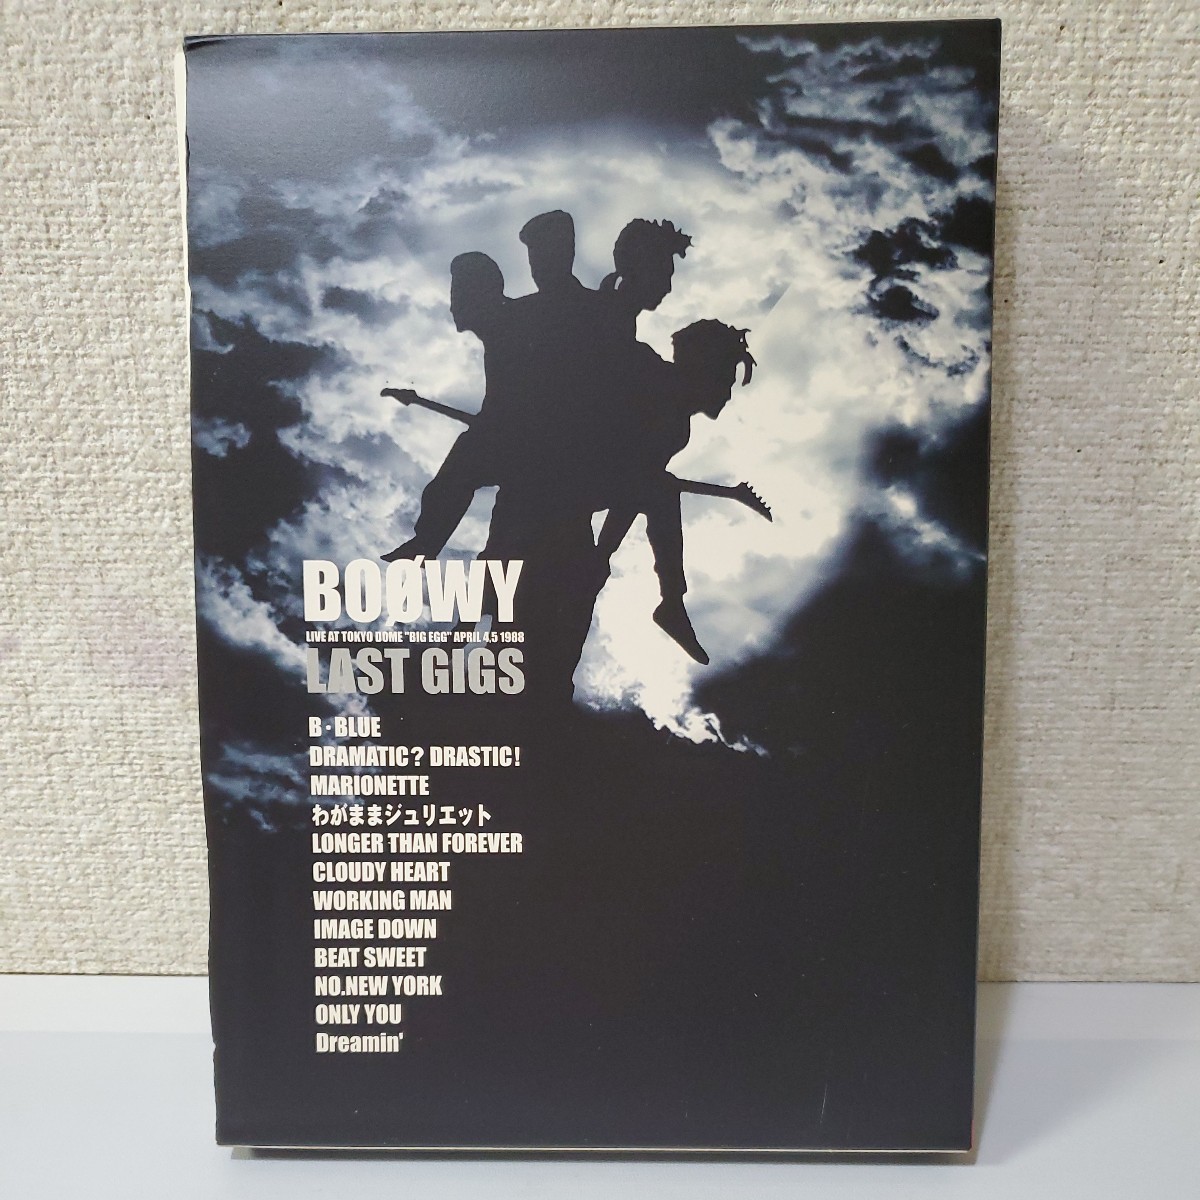 □セル版DVD□BOOWY/LAST GIGS□LIVE AT TOKYO DOME□APRIL4,5 1988